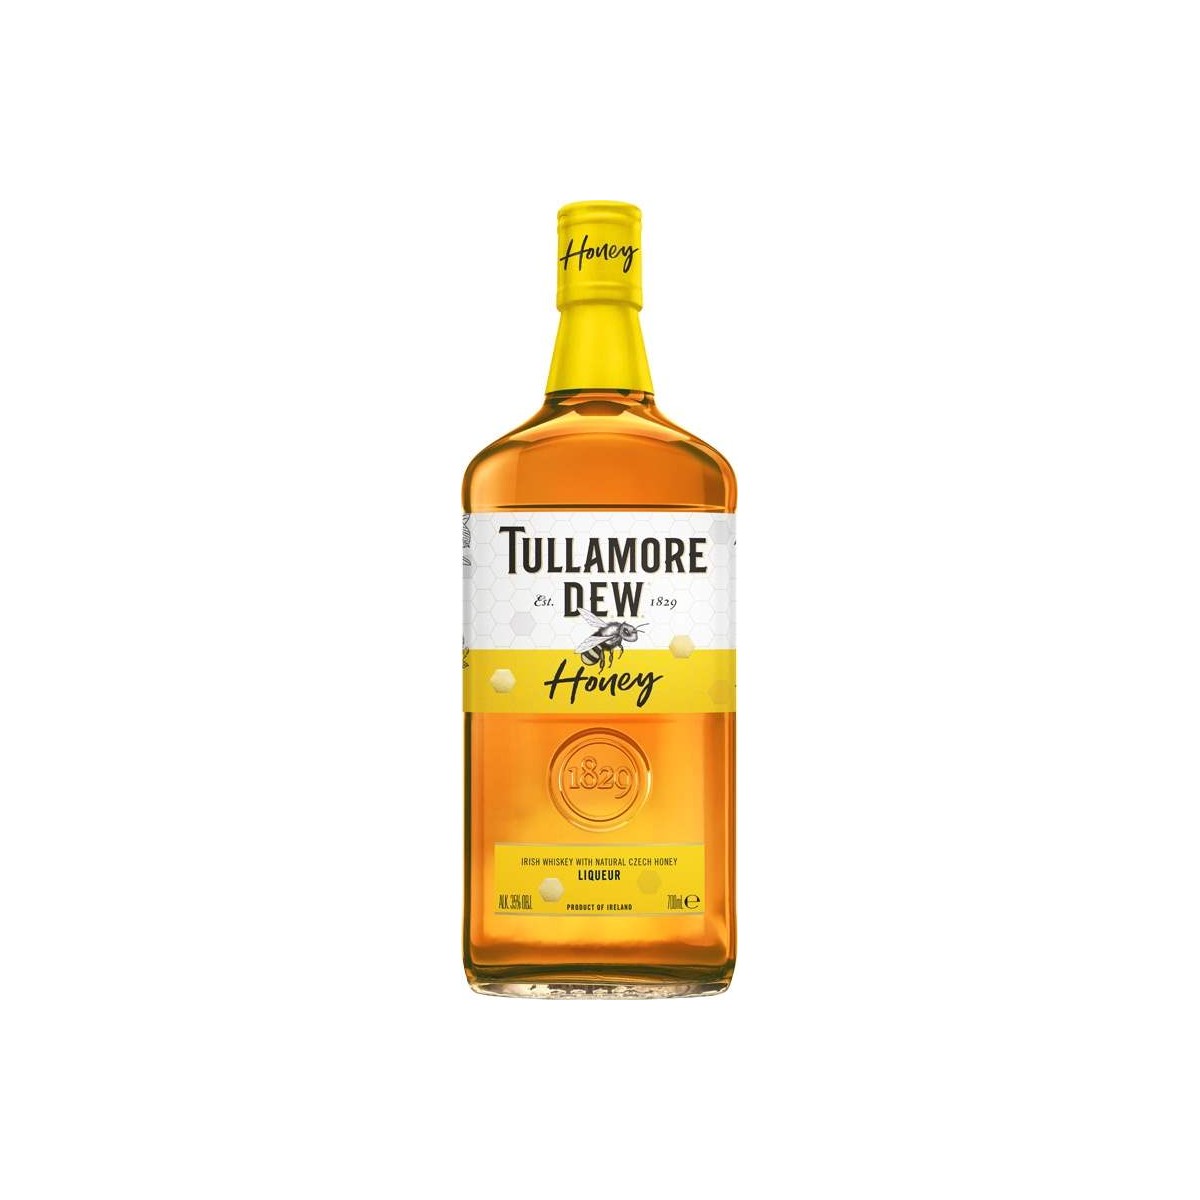 Tullamore DEW Honey 0,7l